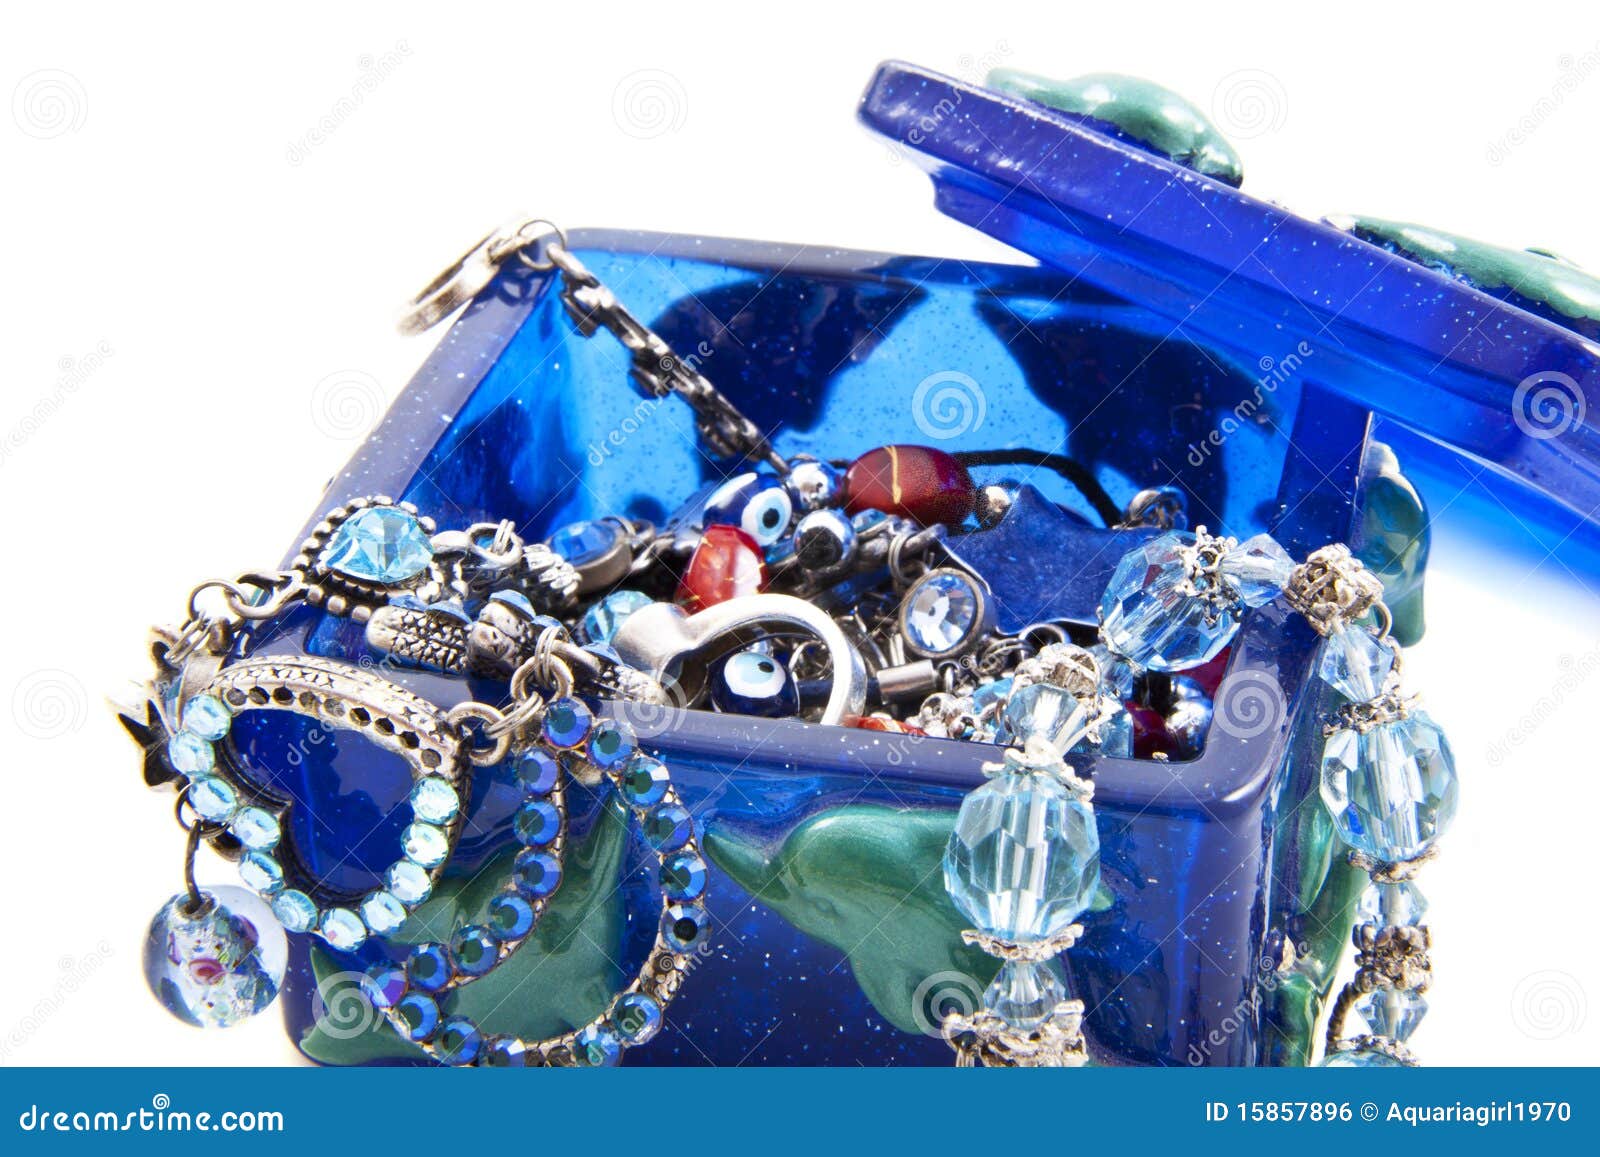 blue jewel box with jewels